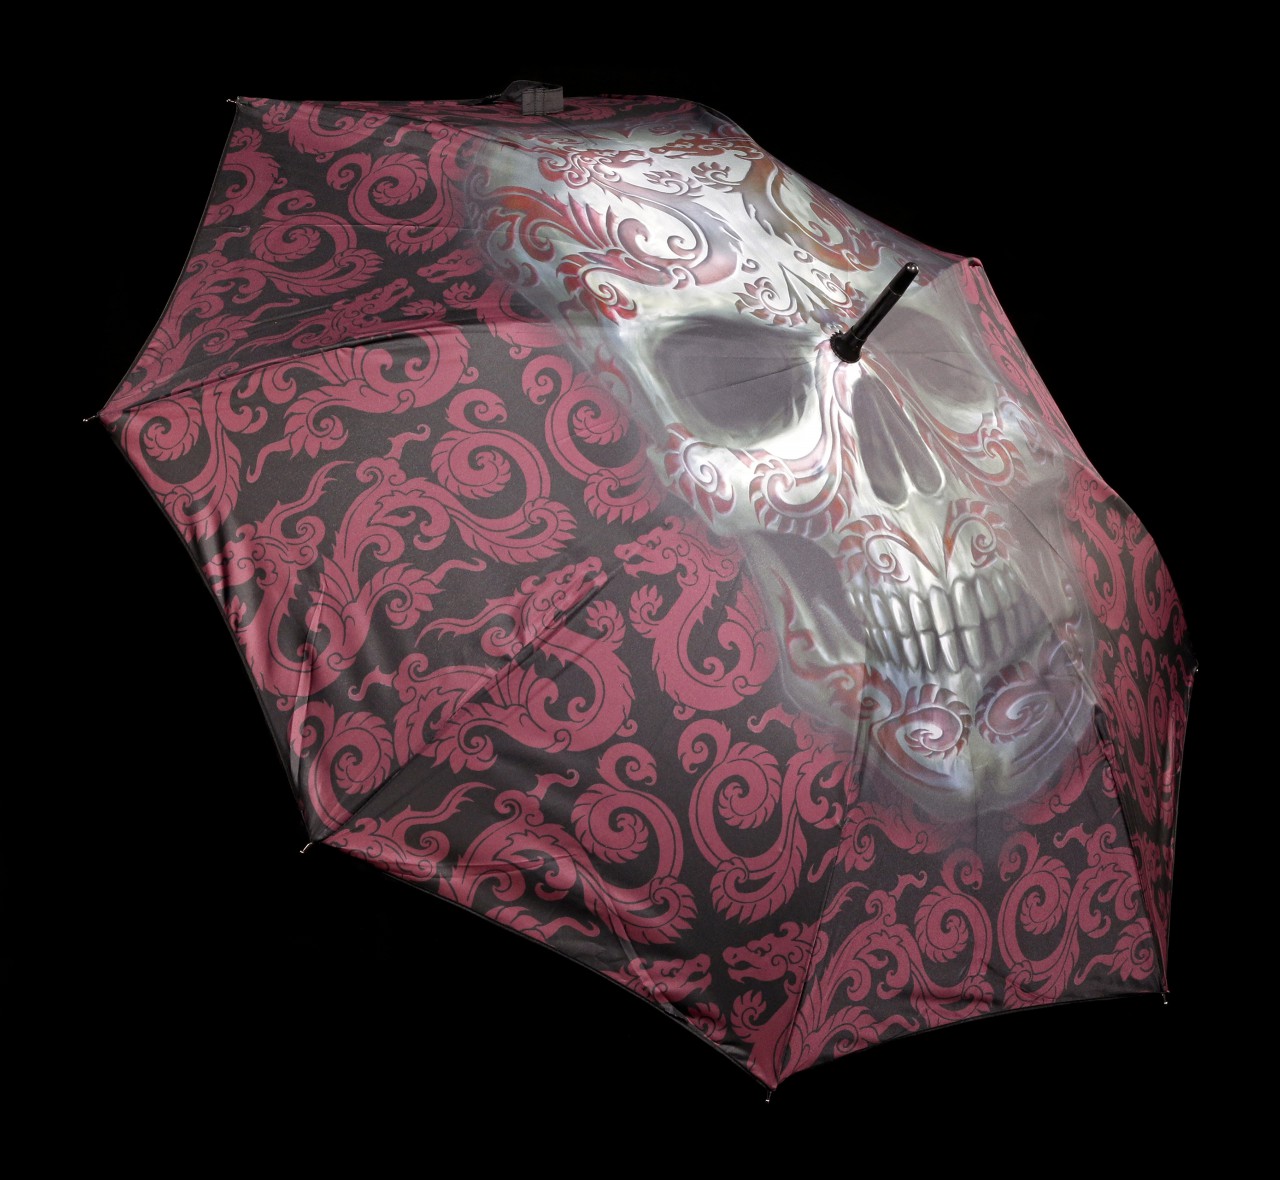 Regenschirm mit Totenkopf - Oriental Skull by Anne Stokes